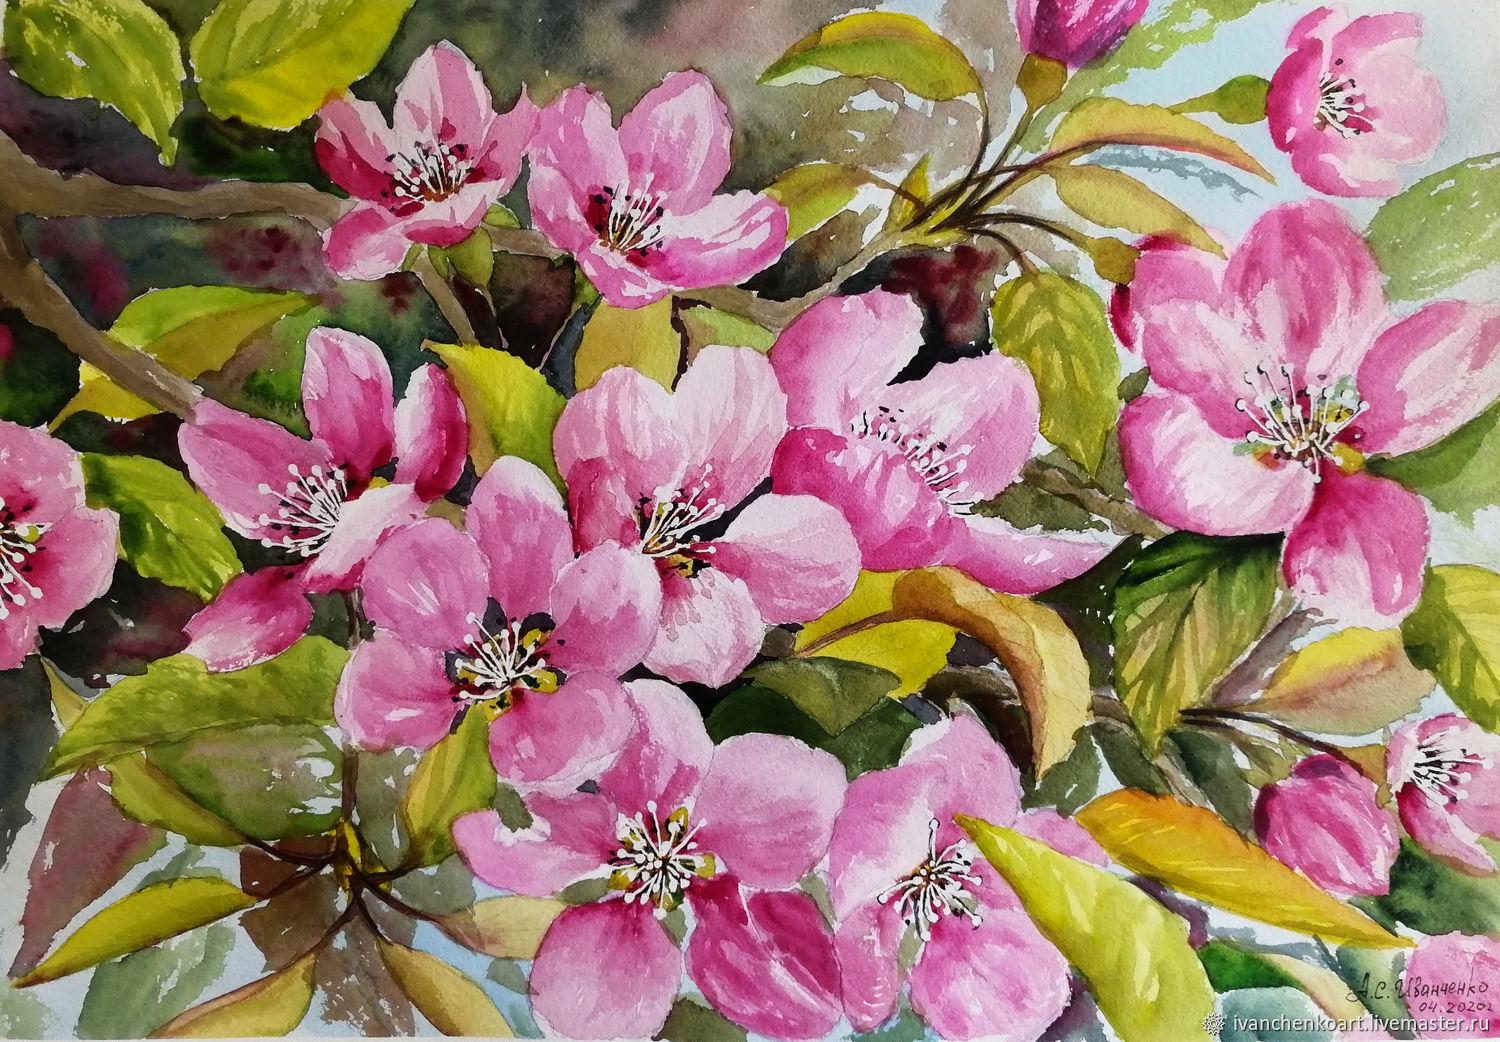 Priroda shop - Весна...!!! Снова радует нас пробуждением природы, яркими  красками, чудесным ароматом! И каждый раз – всё новое, необычайно красивое  и неповторимое! #весна #природа #цветы #spring #nature | Facebook